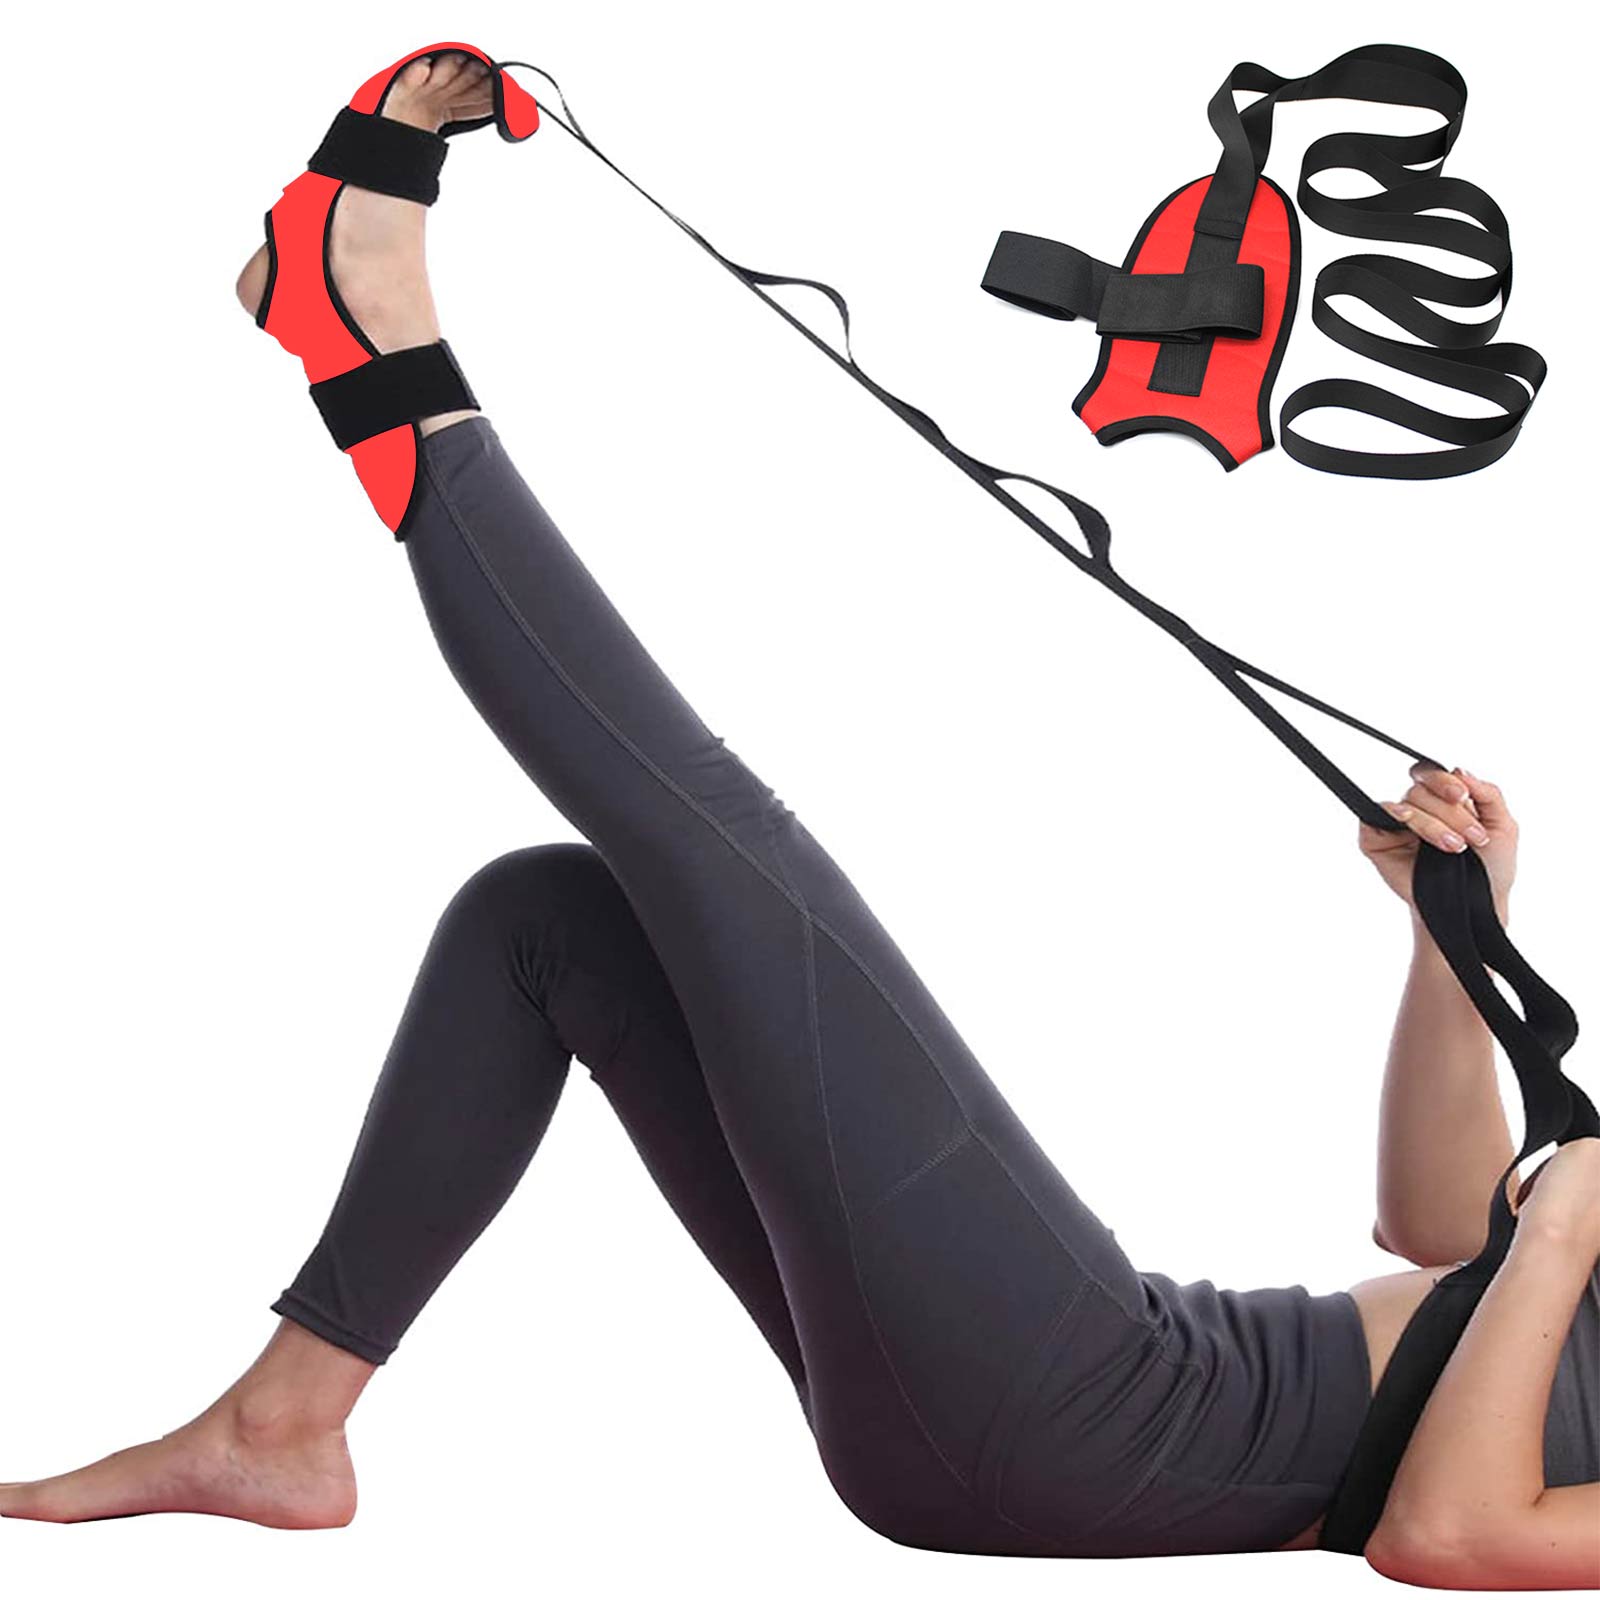 Fascia Leg Stretcher – The Chi Fitness